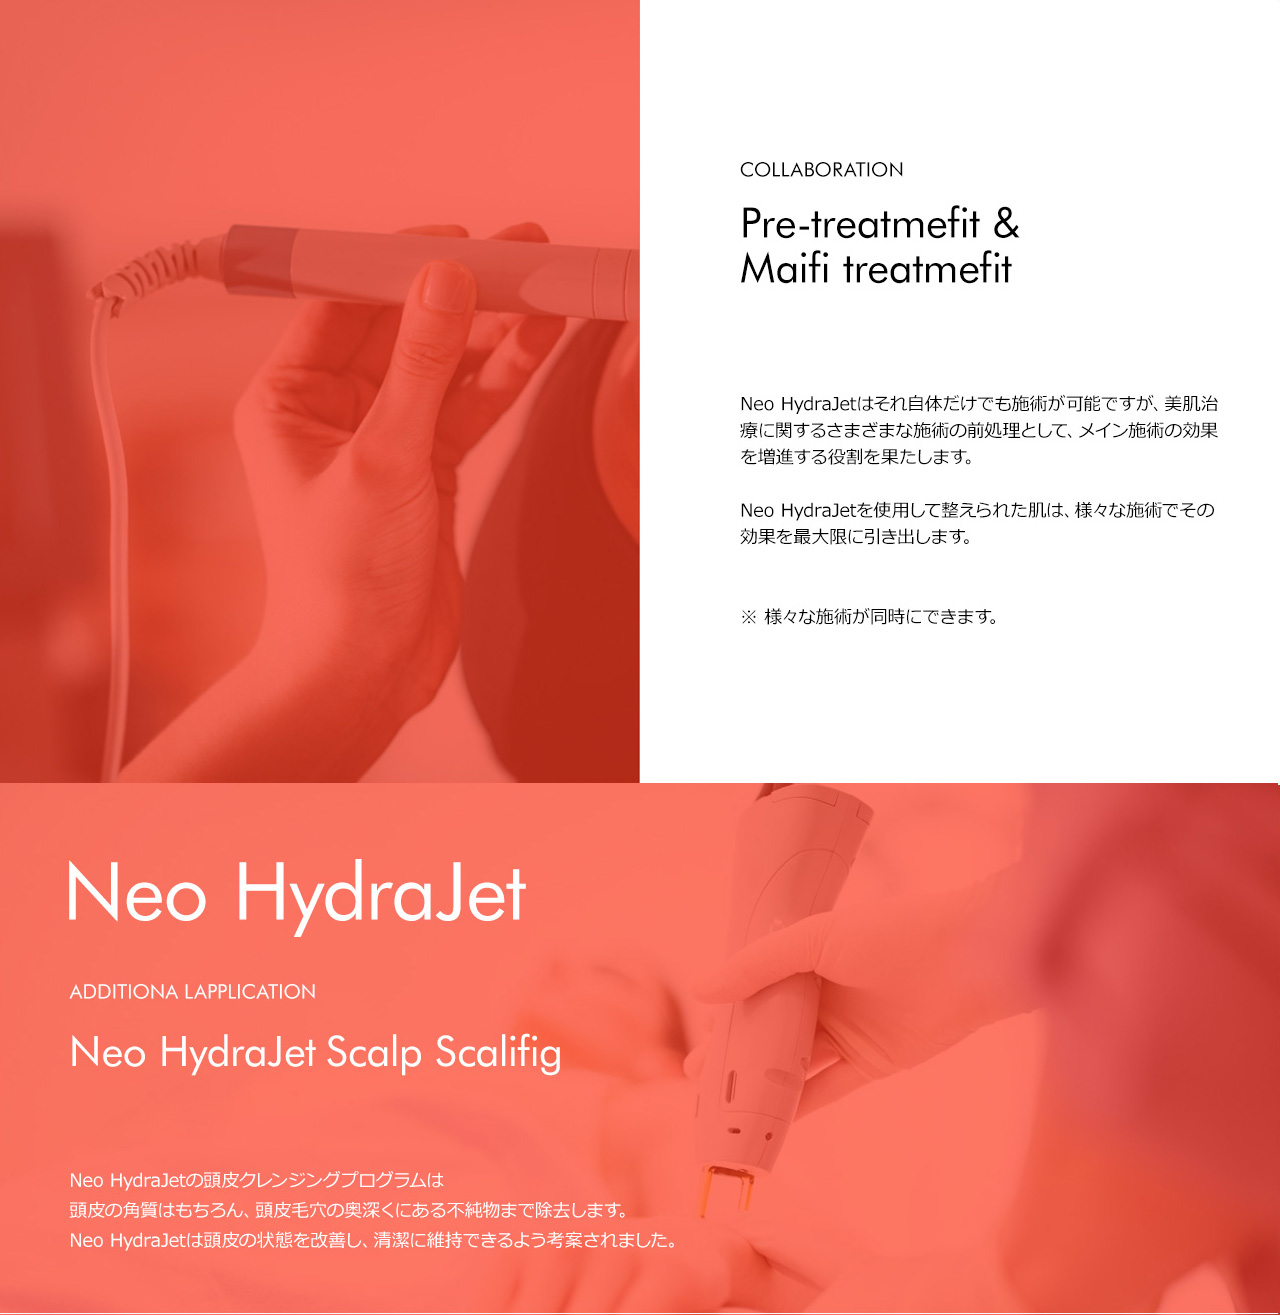 Neo HydraJetを使用して整えられた肌は、様々な施術でその効果を最大限に引き出します。